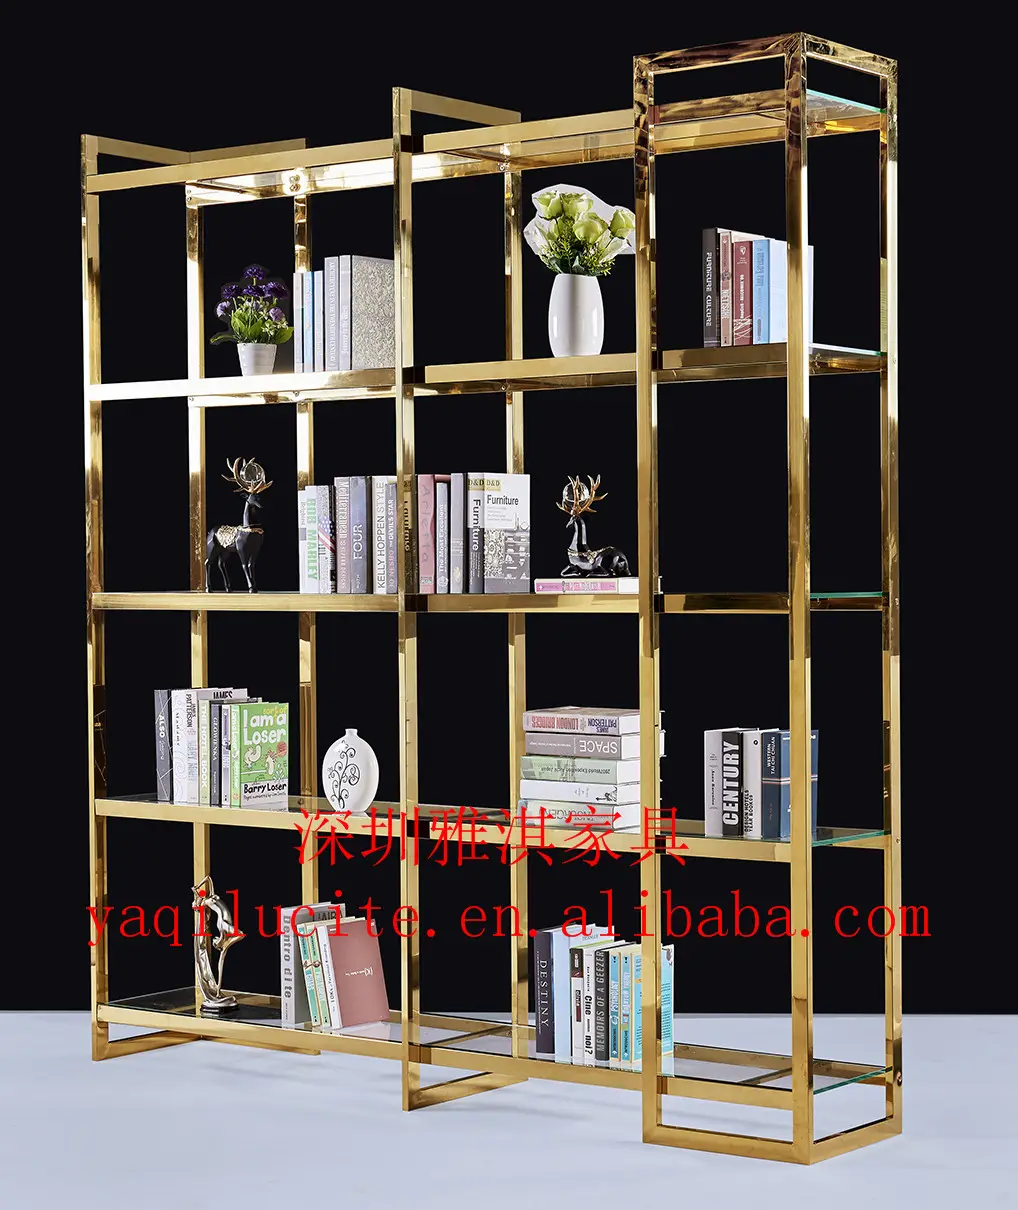 Diseño moderno de alta calidad de la librería de la habitación de libro de metal estante de libro